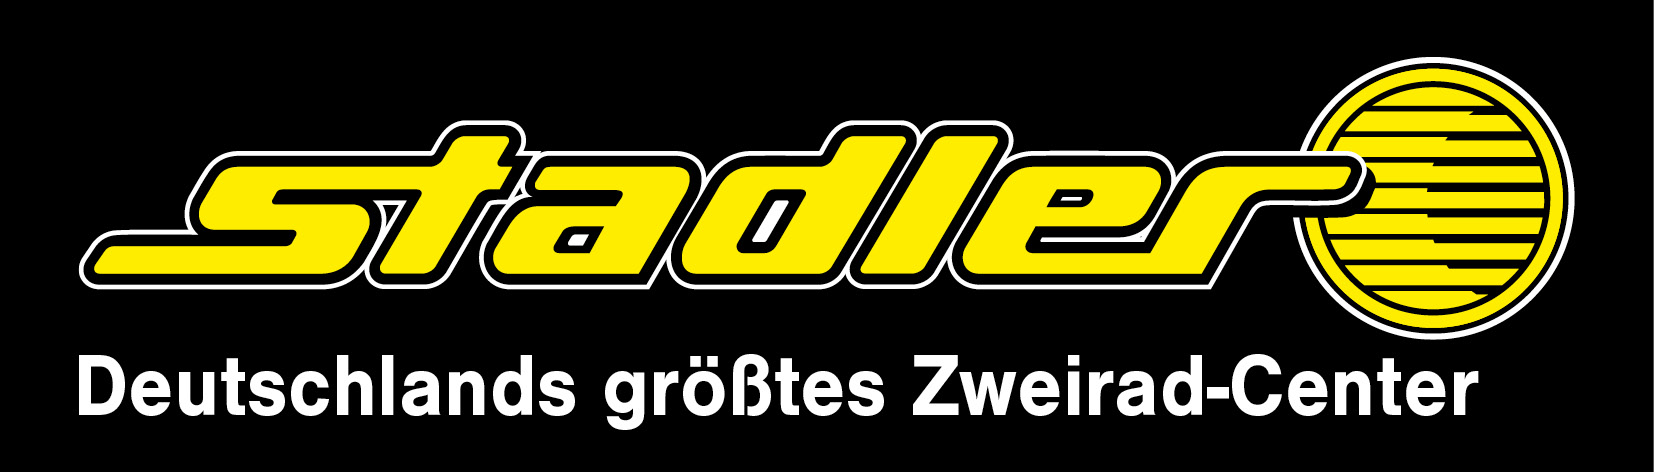 Logo von Zweirad-Stadler; Copyright: Zweirad-Stadler